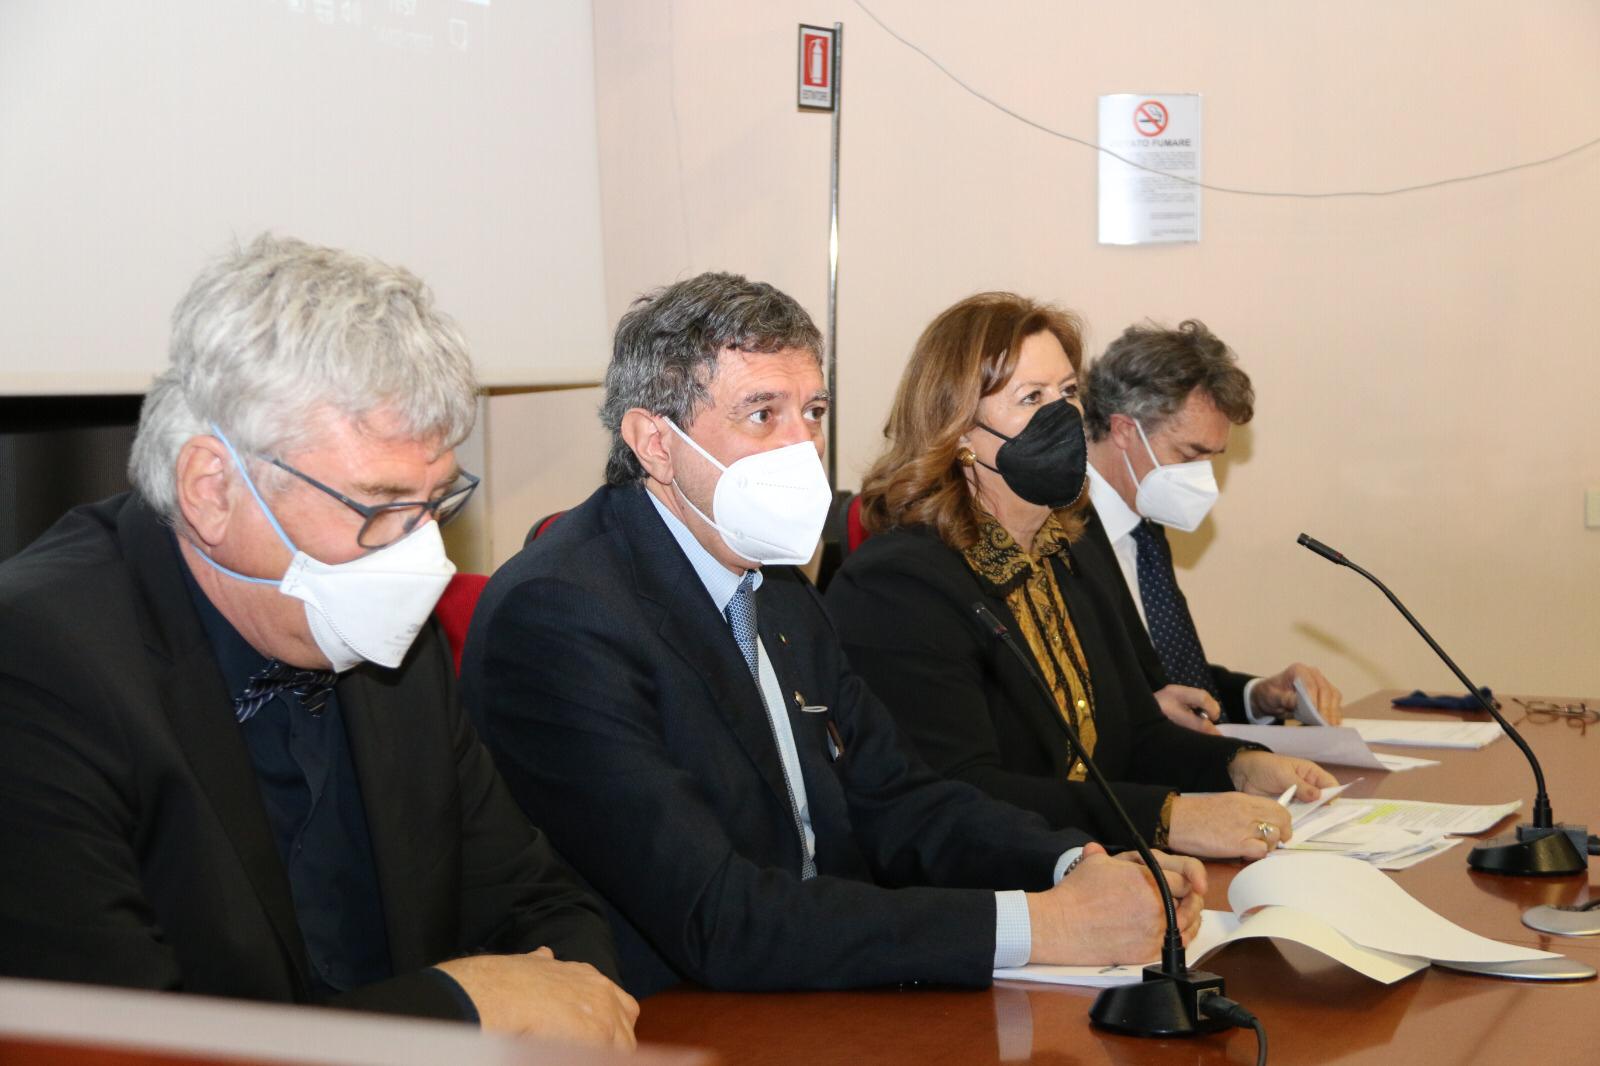 Sanità: Marsilio e Verì, approvata proposta di accordo con Ministero per i nuovi ospedali di Avezzano, Lanciano e Vasto